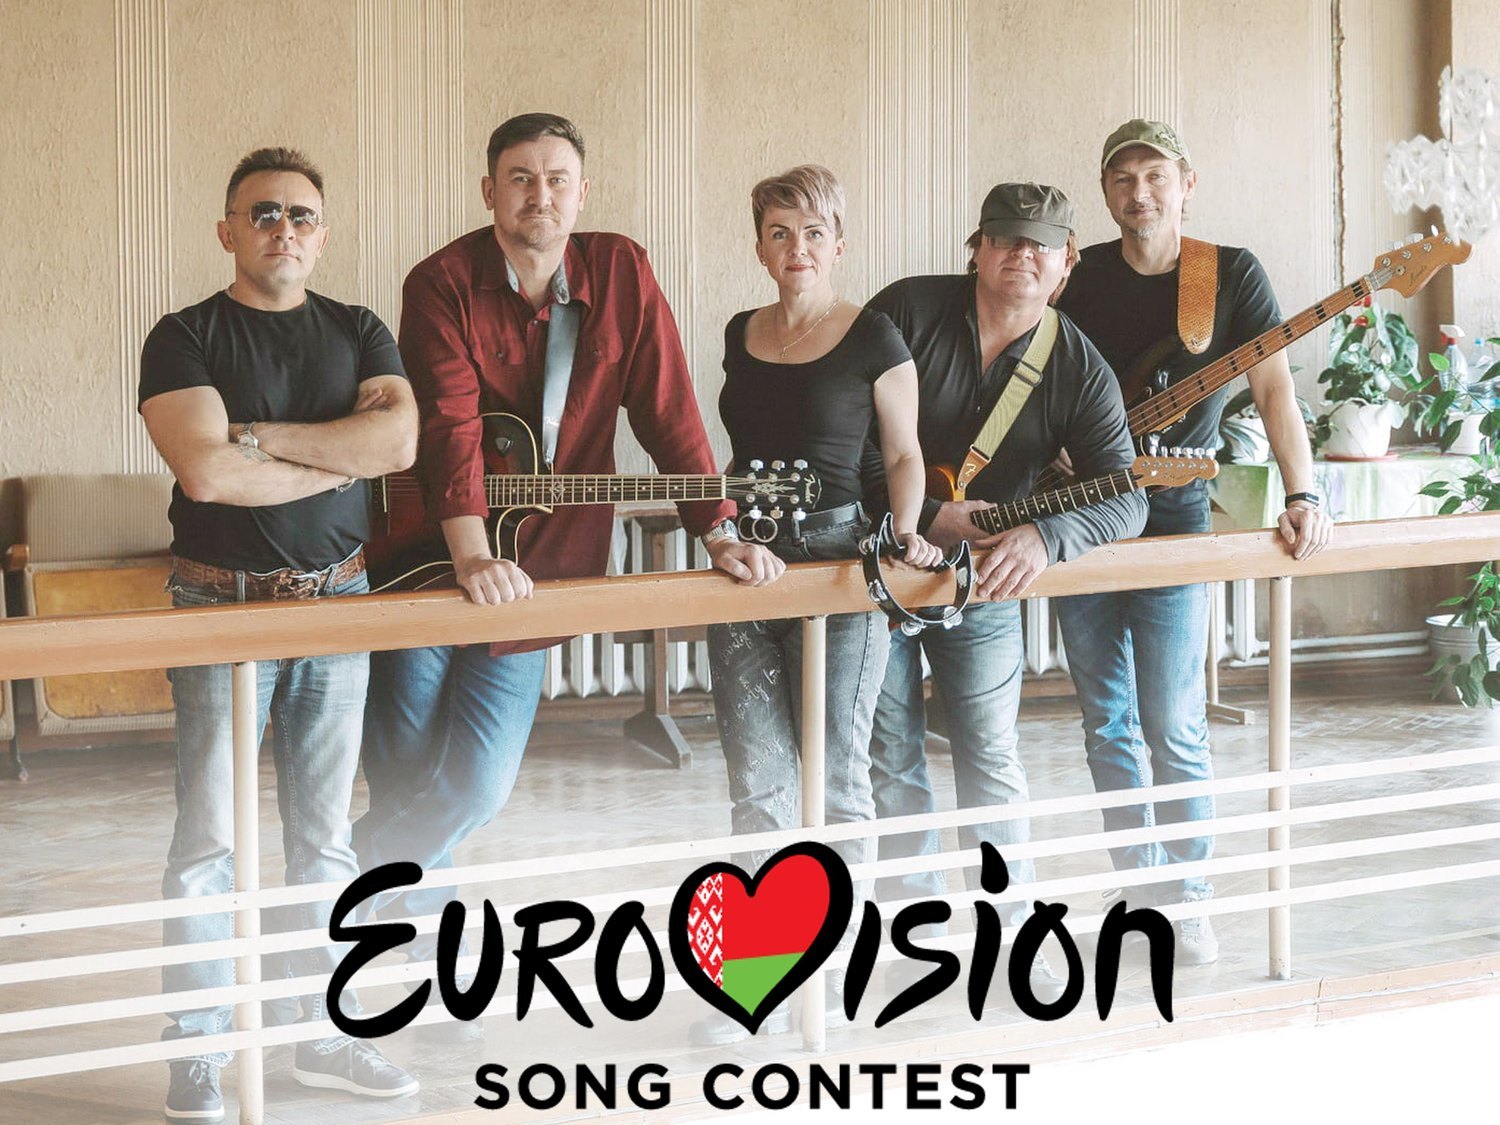 Bielorrusia es expulsada de Eurovisión 2021 tras enviar de nuevo una canción con mensaje político